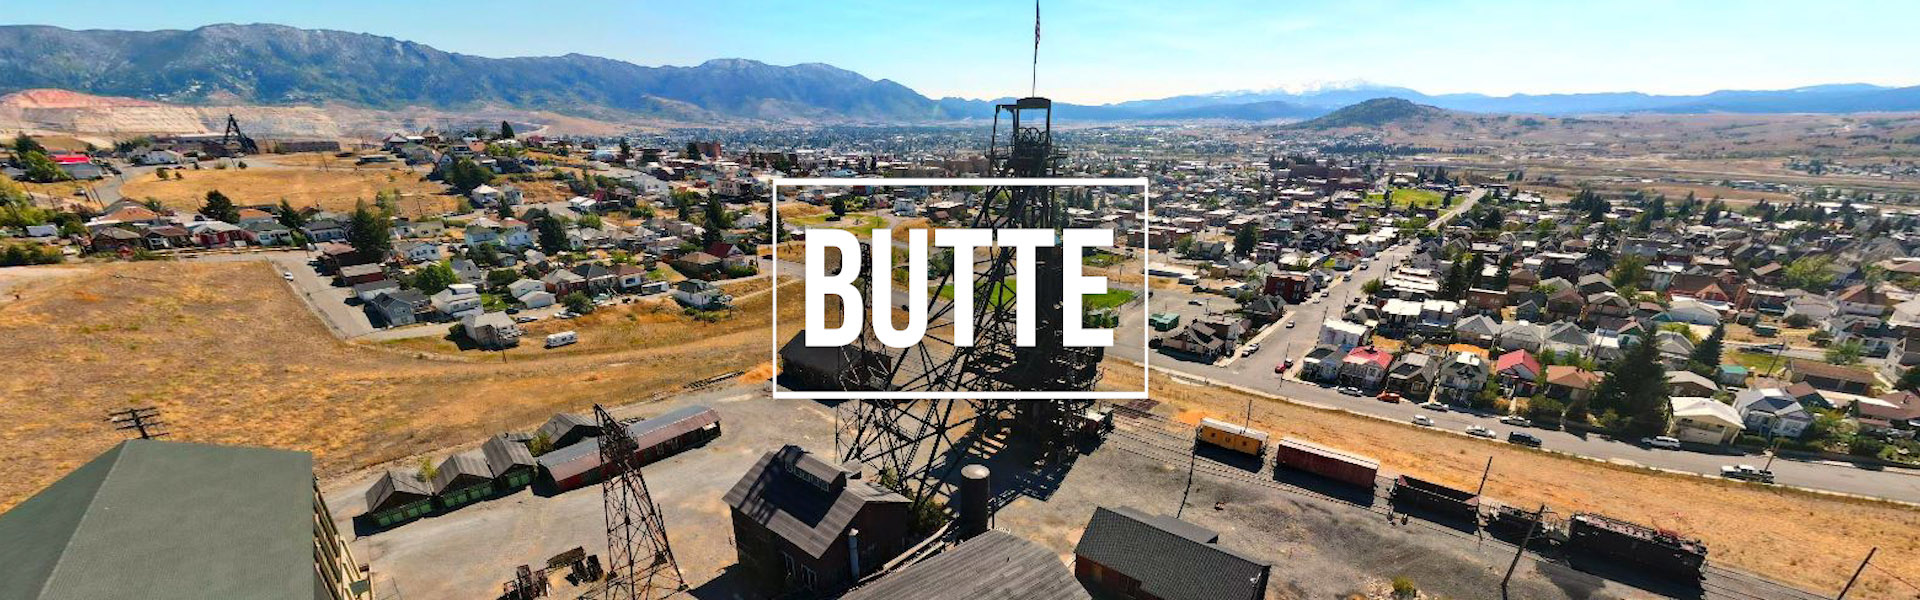 Butte Mt Video Production Photographer